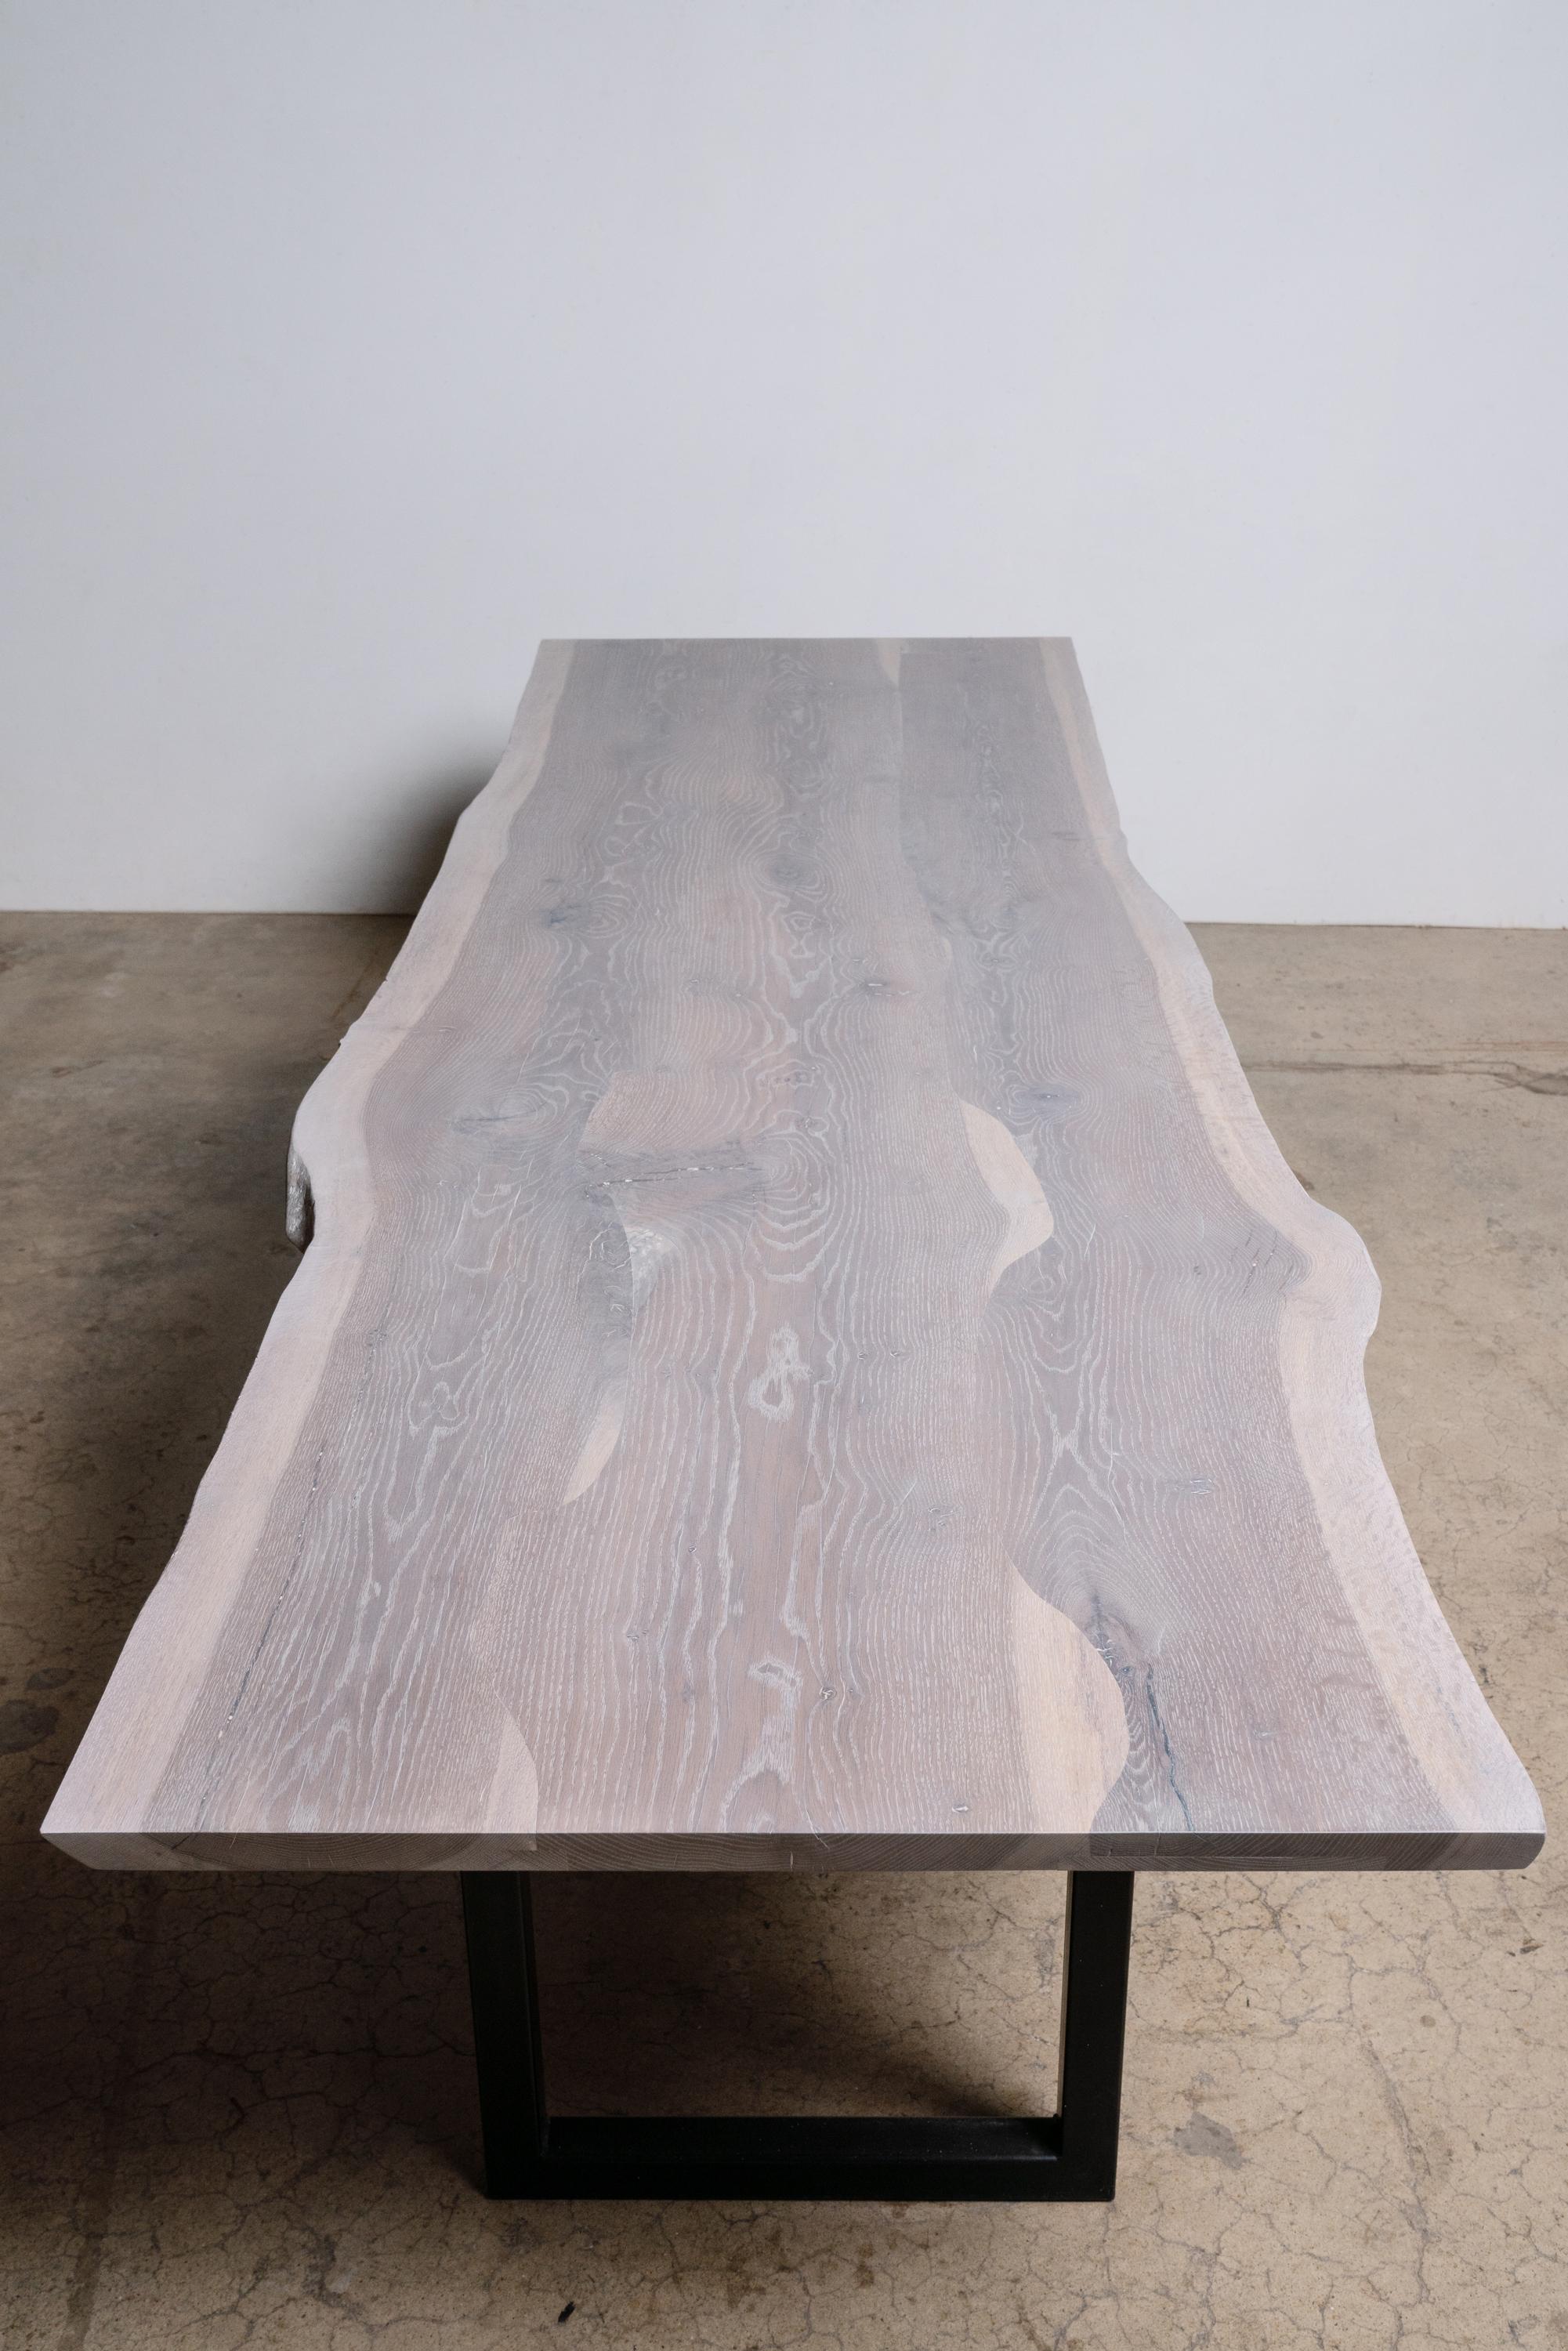 Wir nennen unseren Tisch aus weißer Eiche mit grauer Kante auf einem modernen quadratischen Untergestell aus schwarzem Stahl 